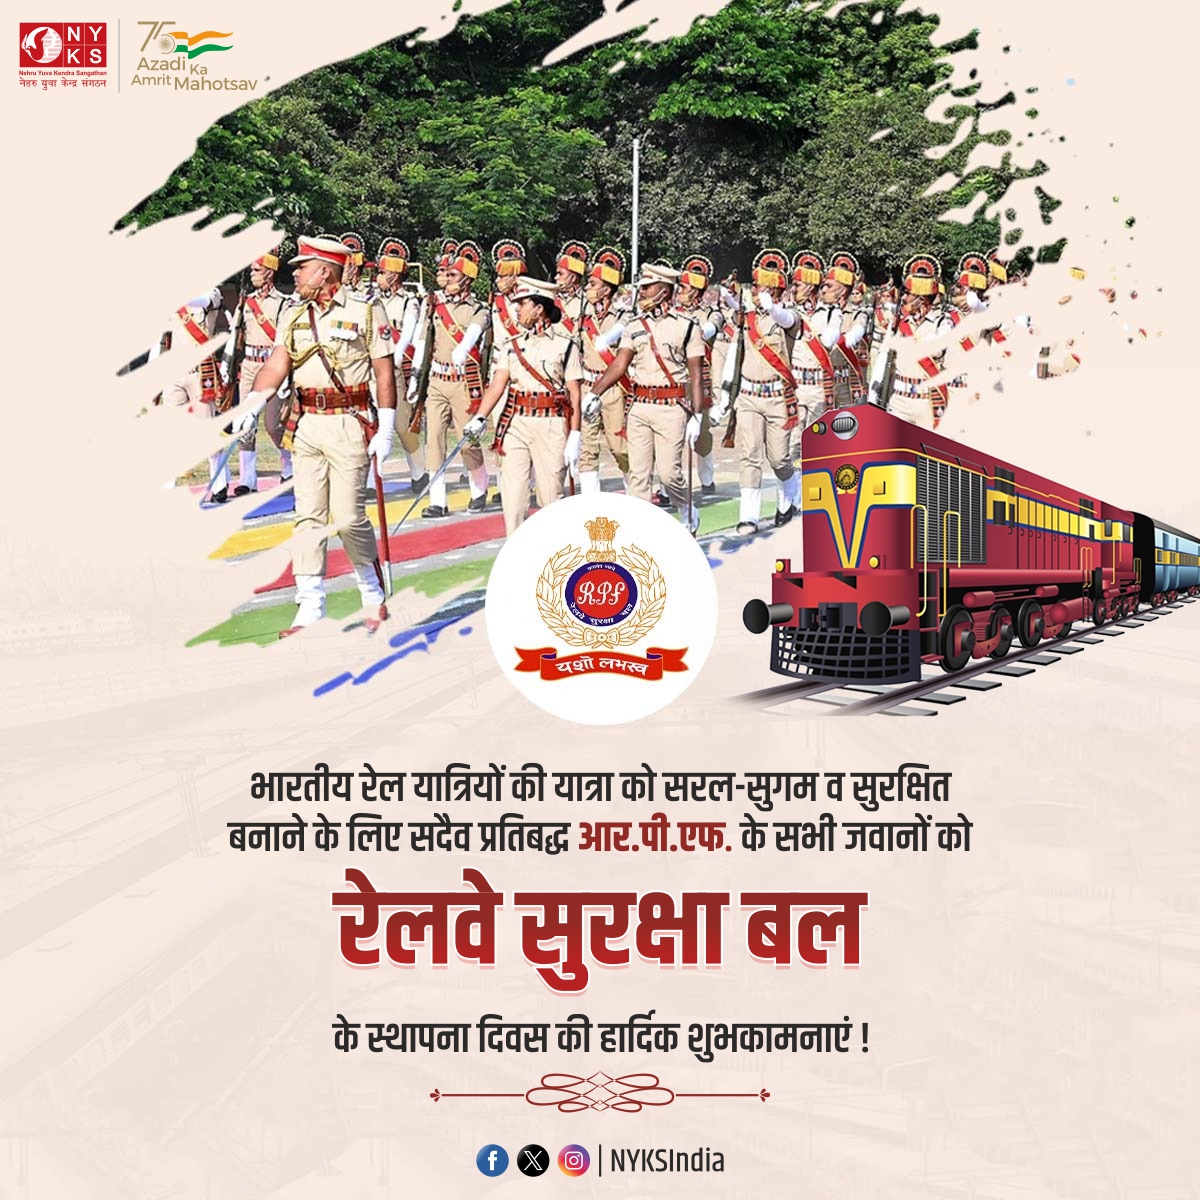 रेलवे सुरक्षा बल (RPF) दिवस की हार्दिक शुभकामनाएं! आपकी सेवाएं हमारी रेलवे सुरक्षा के लिए अत्यंत महत्वपूर्ण हैं। आपका साहस और संघर्ष हमें सुरक्षित रेलवे यात्रा का आनंद देते हैं। 🚄👮‍♂️🇮🇳 

#रेलवे_सुरक्षा_दिवस #RPFDay #RPFRaisingDay #RPFFoundationDay #NYKS #India